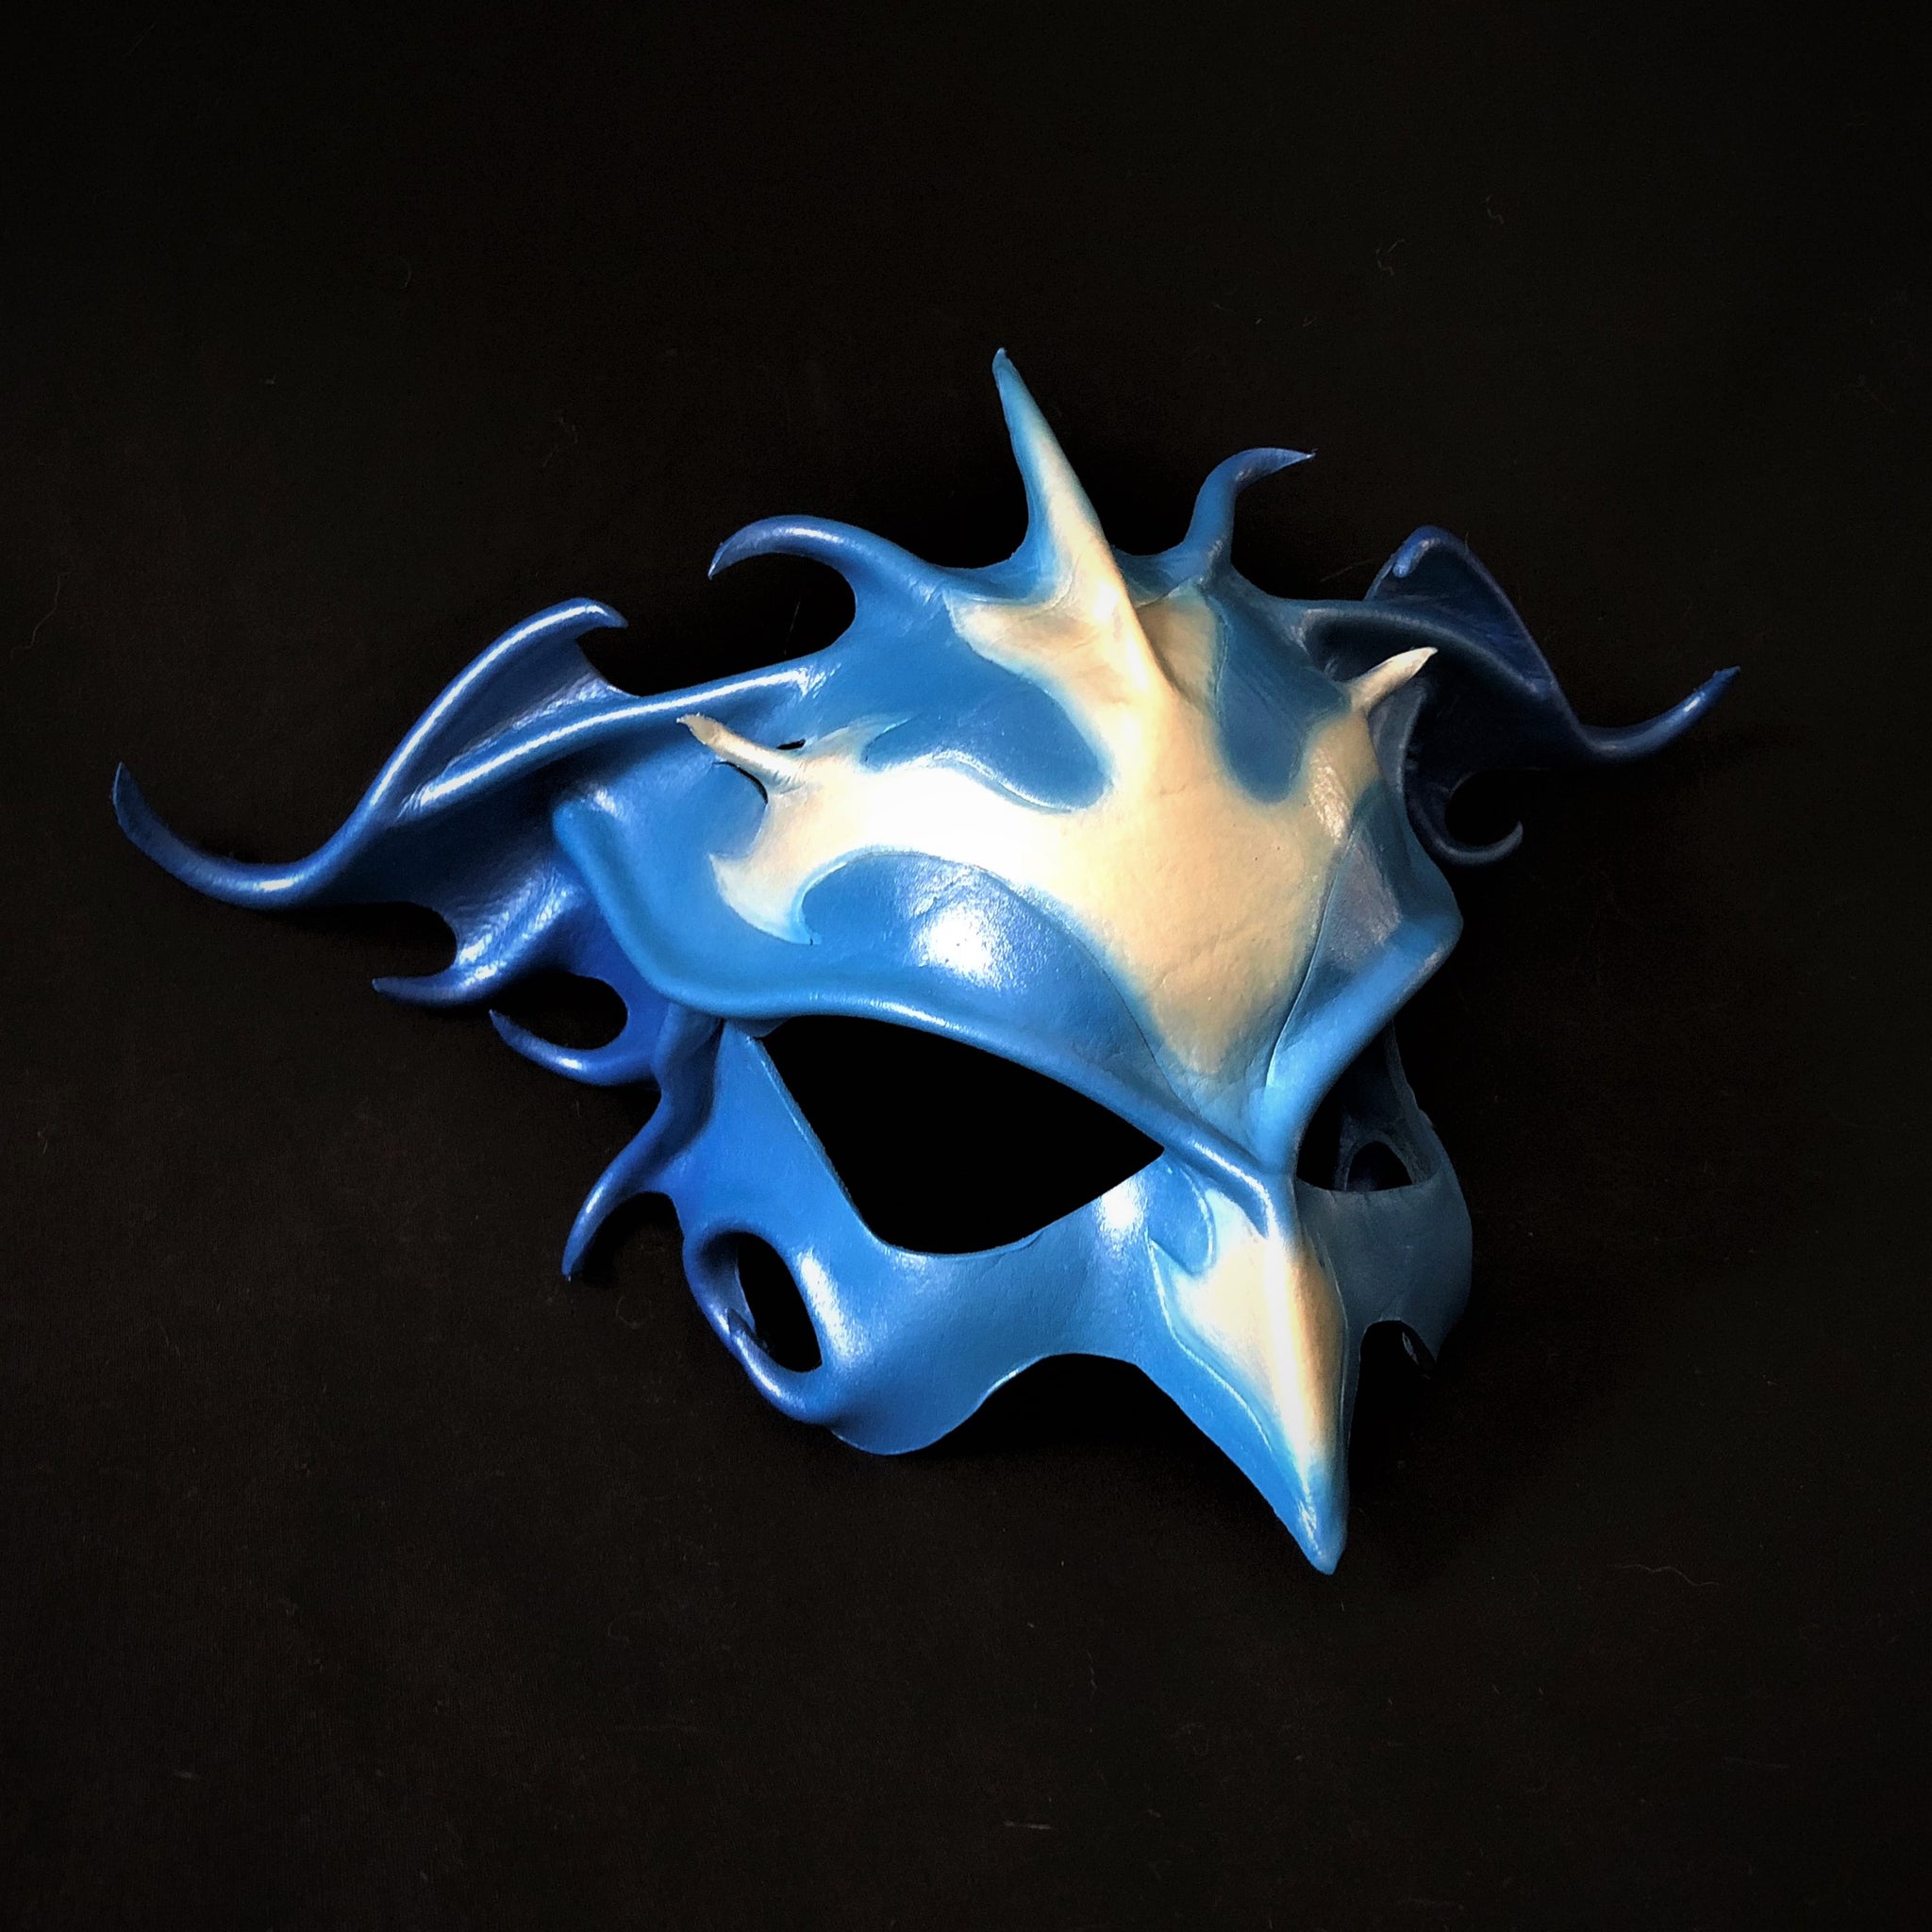 New Ram Masquerade Masks Burning Man Face Mask USA Free Shipping